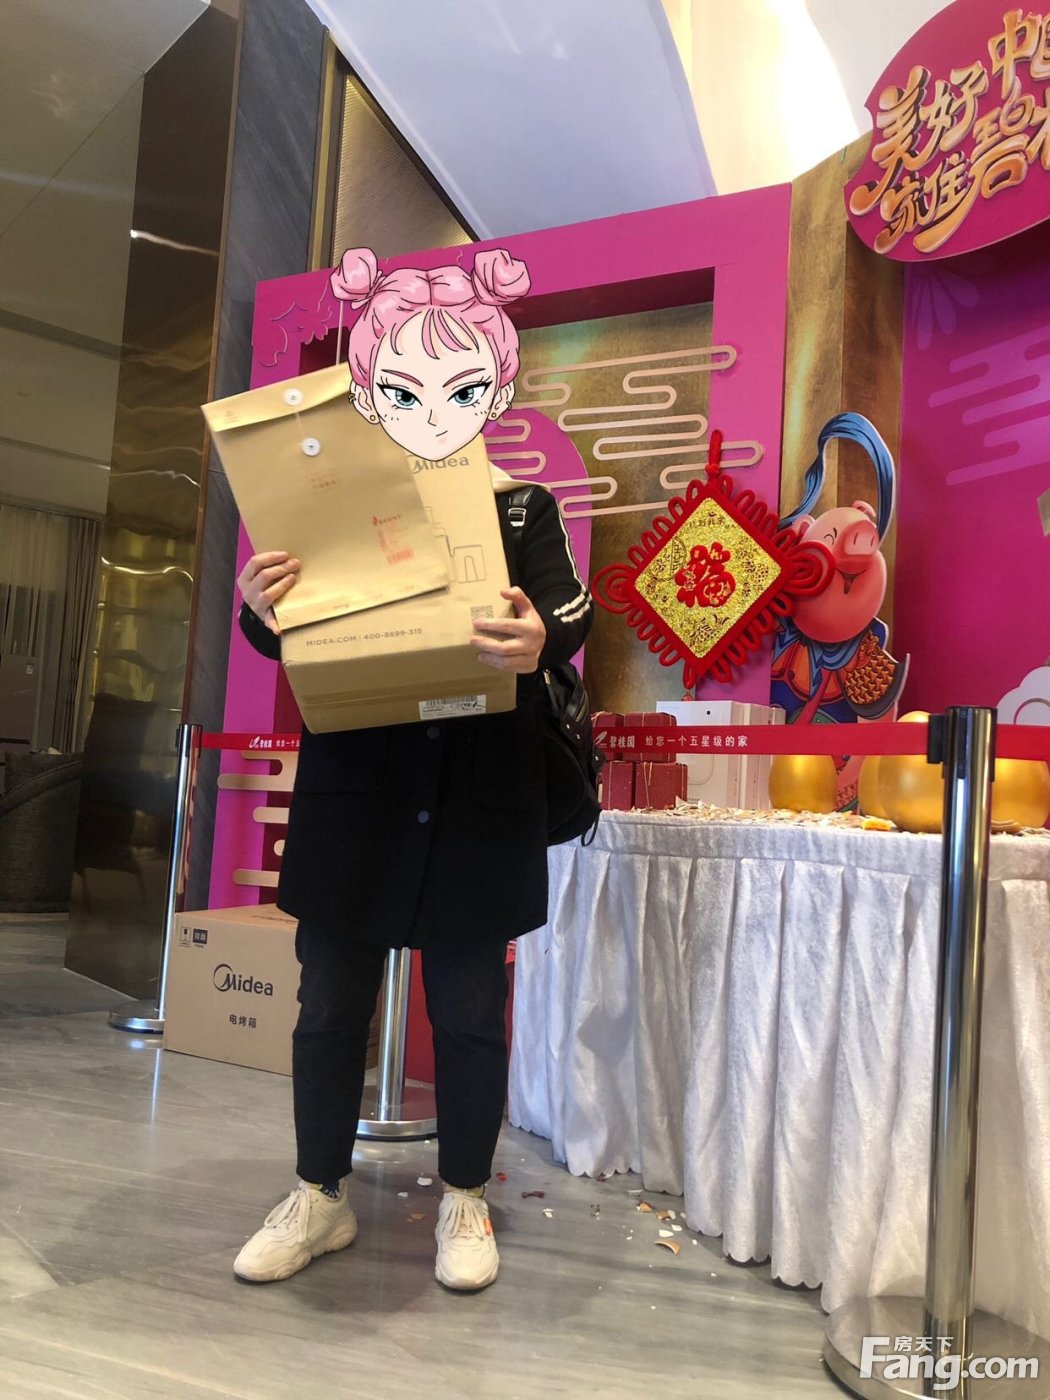 置业顾问谭宇祥发布了一条碧桂园星荟的抖房